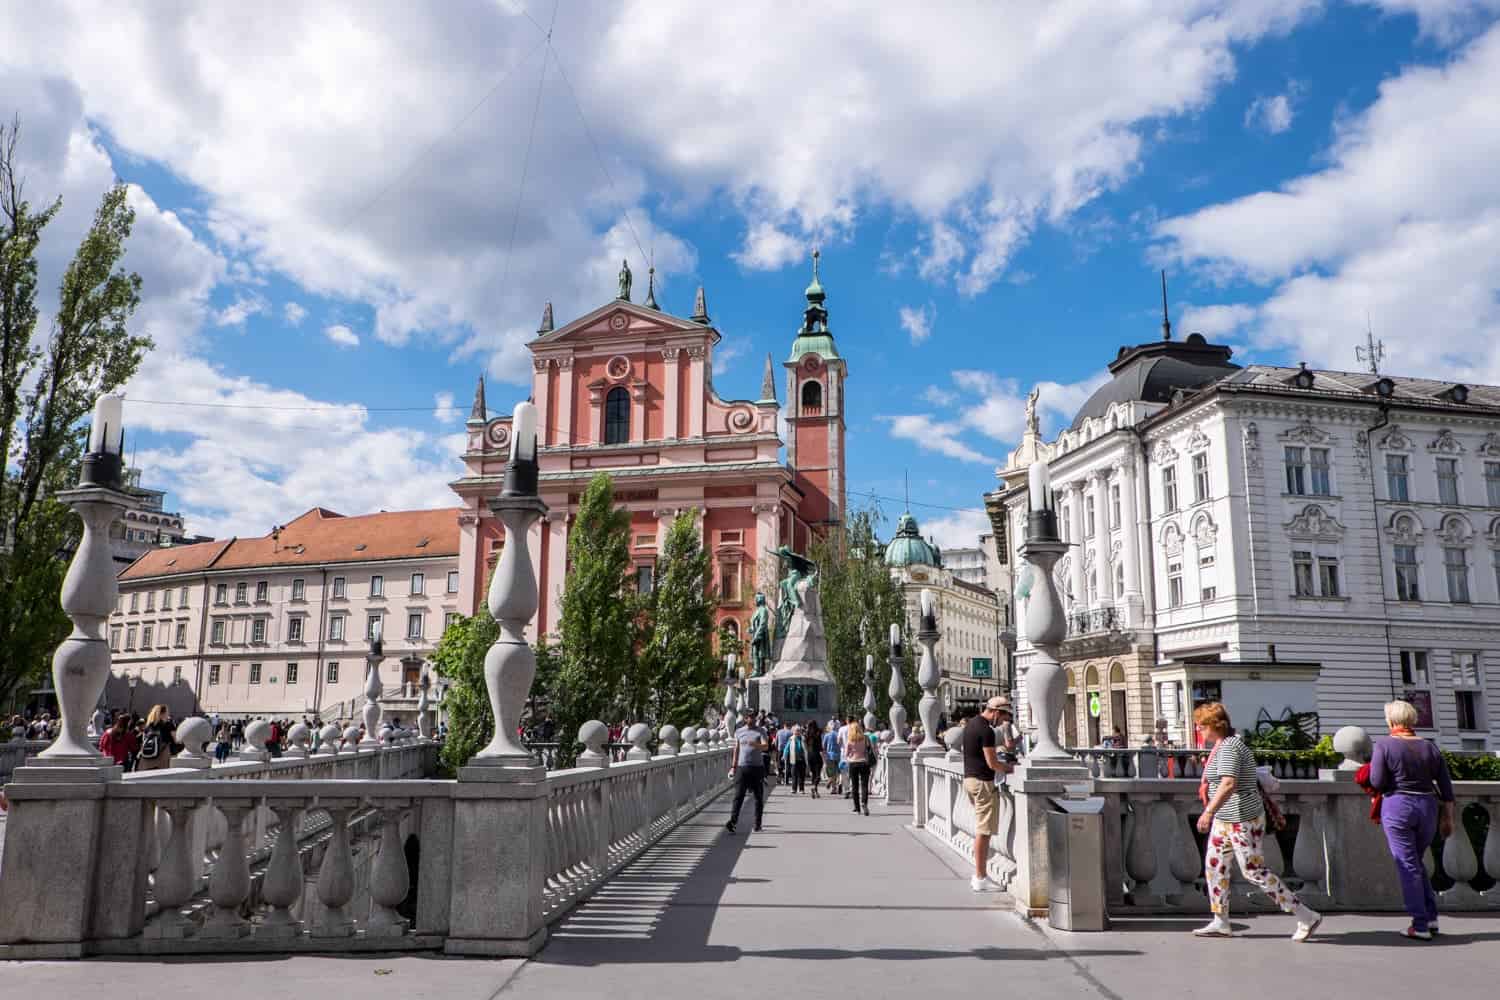 The Triple Bridge in Ljubljana designed by Jože Plečnik